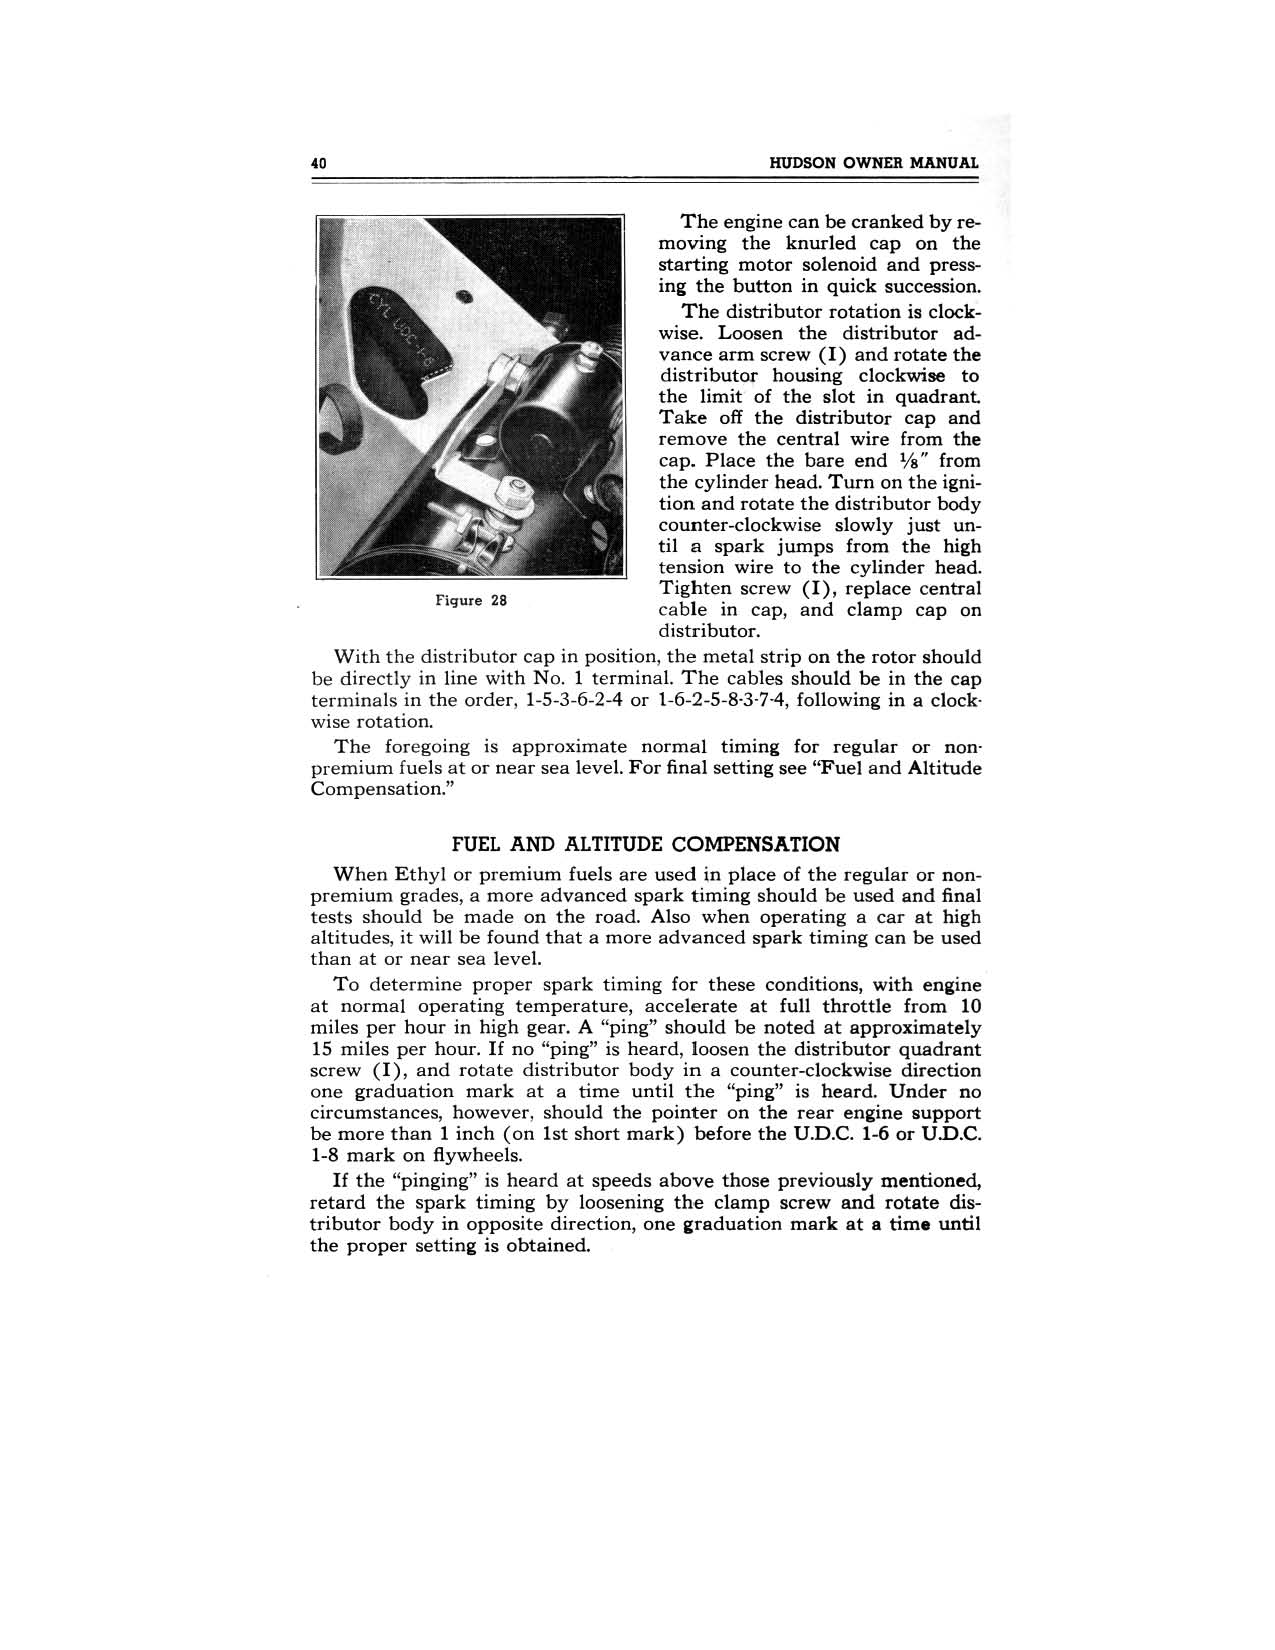 1949 Hudson Owners Manual-42